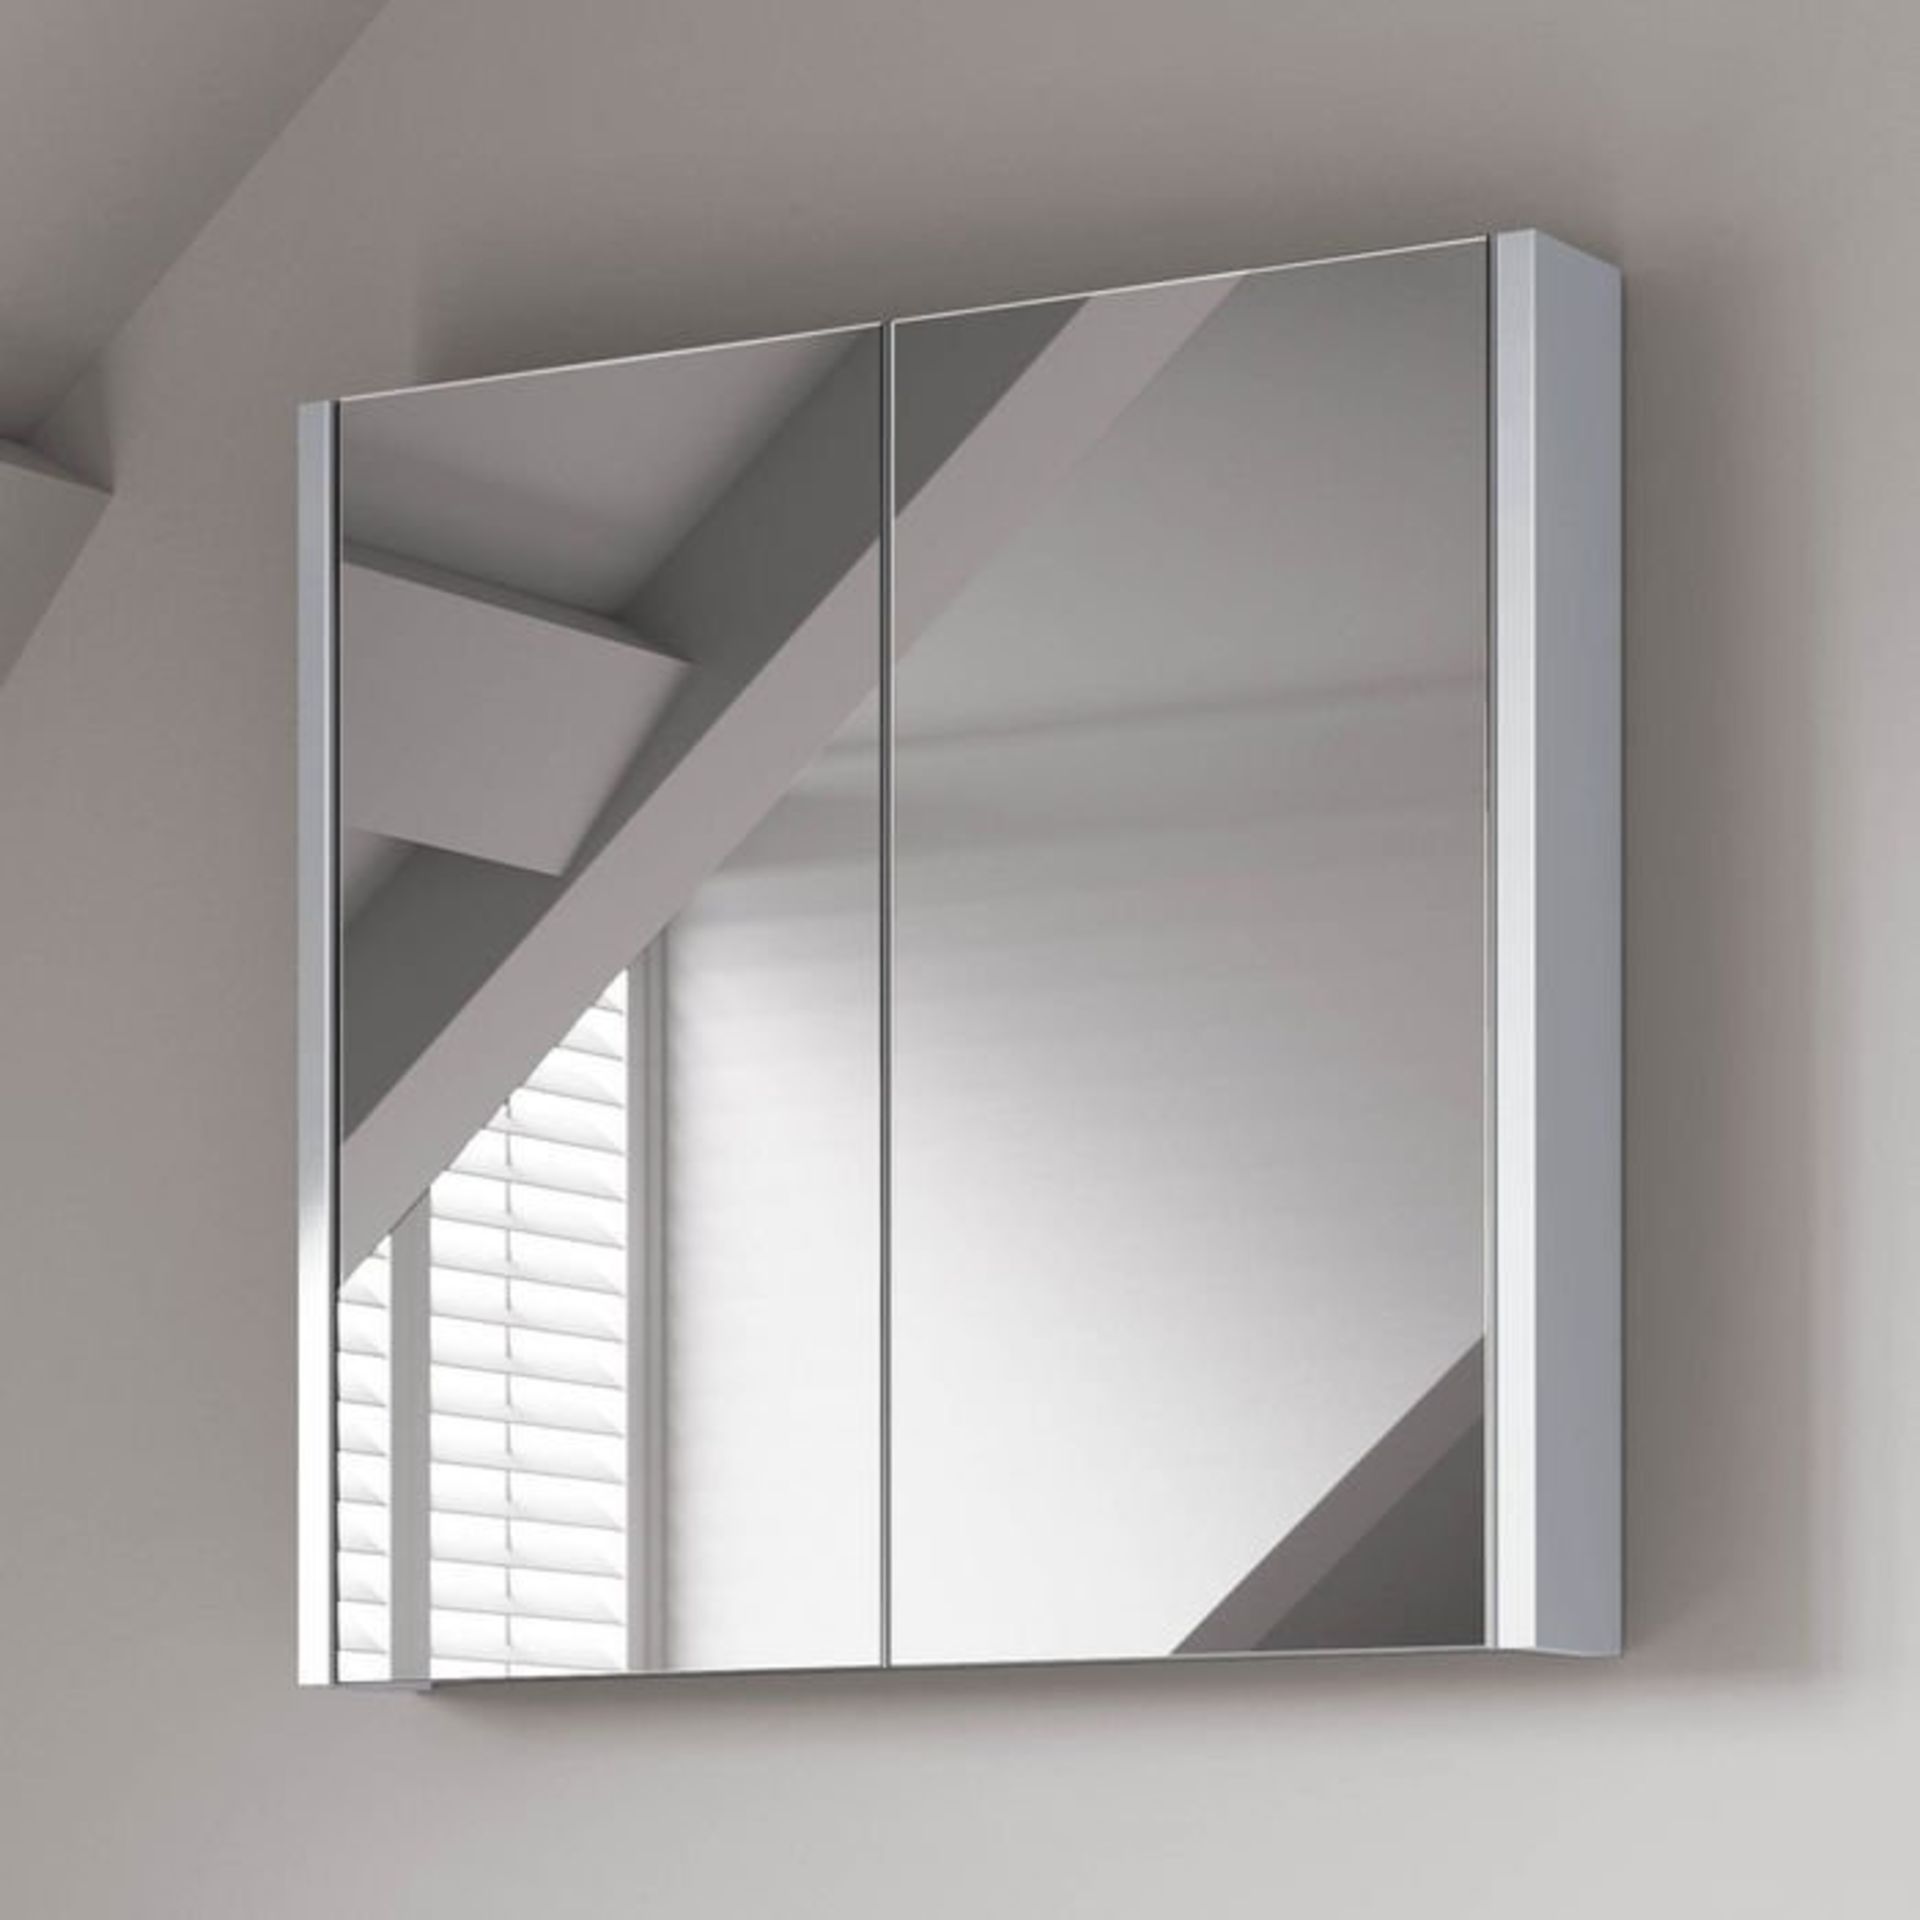 (S28) 600mm Gloss White Double Door Mirror Cabinet RRP £174.99 Sleek contemporary design Double door